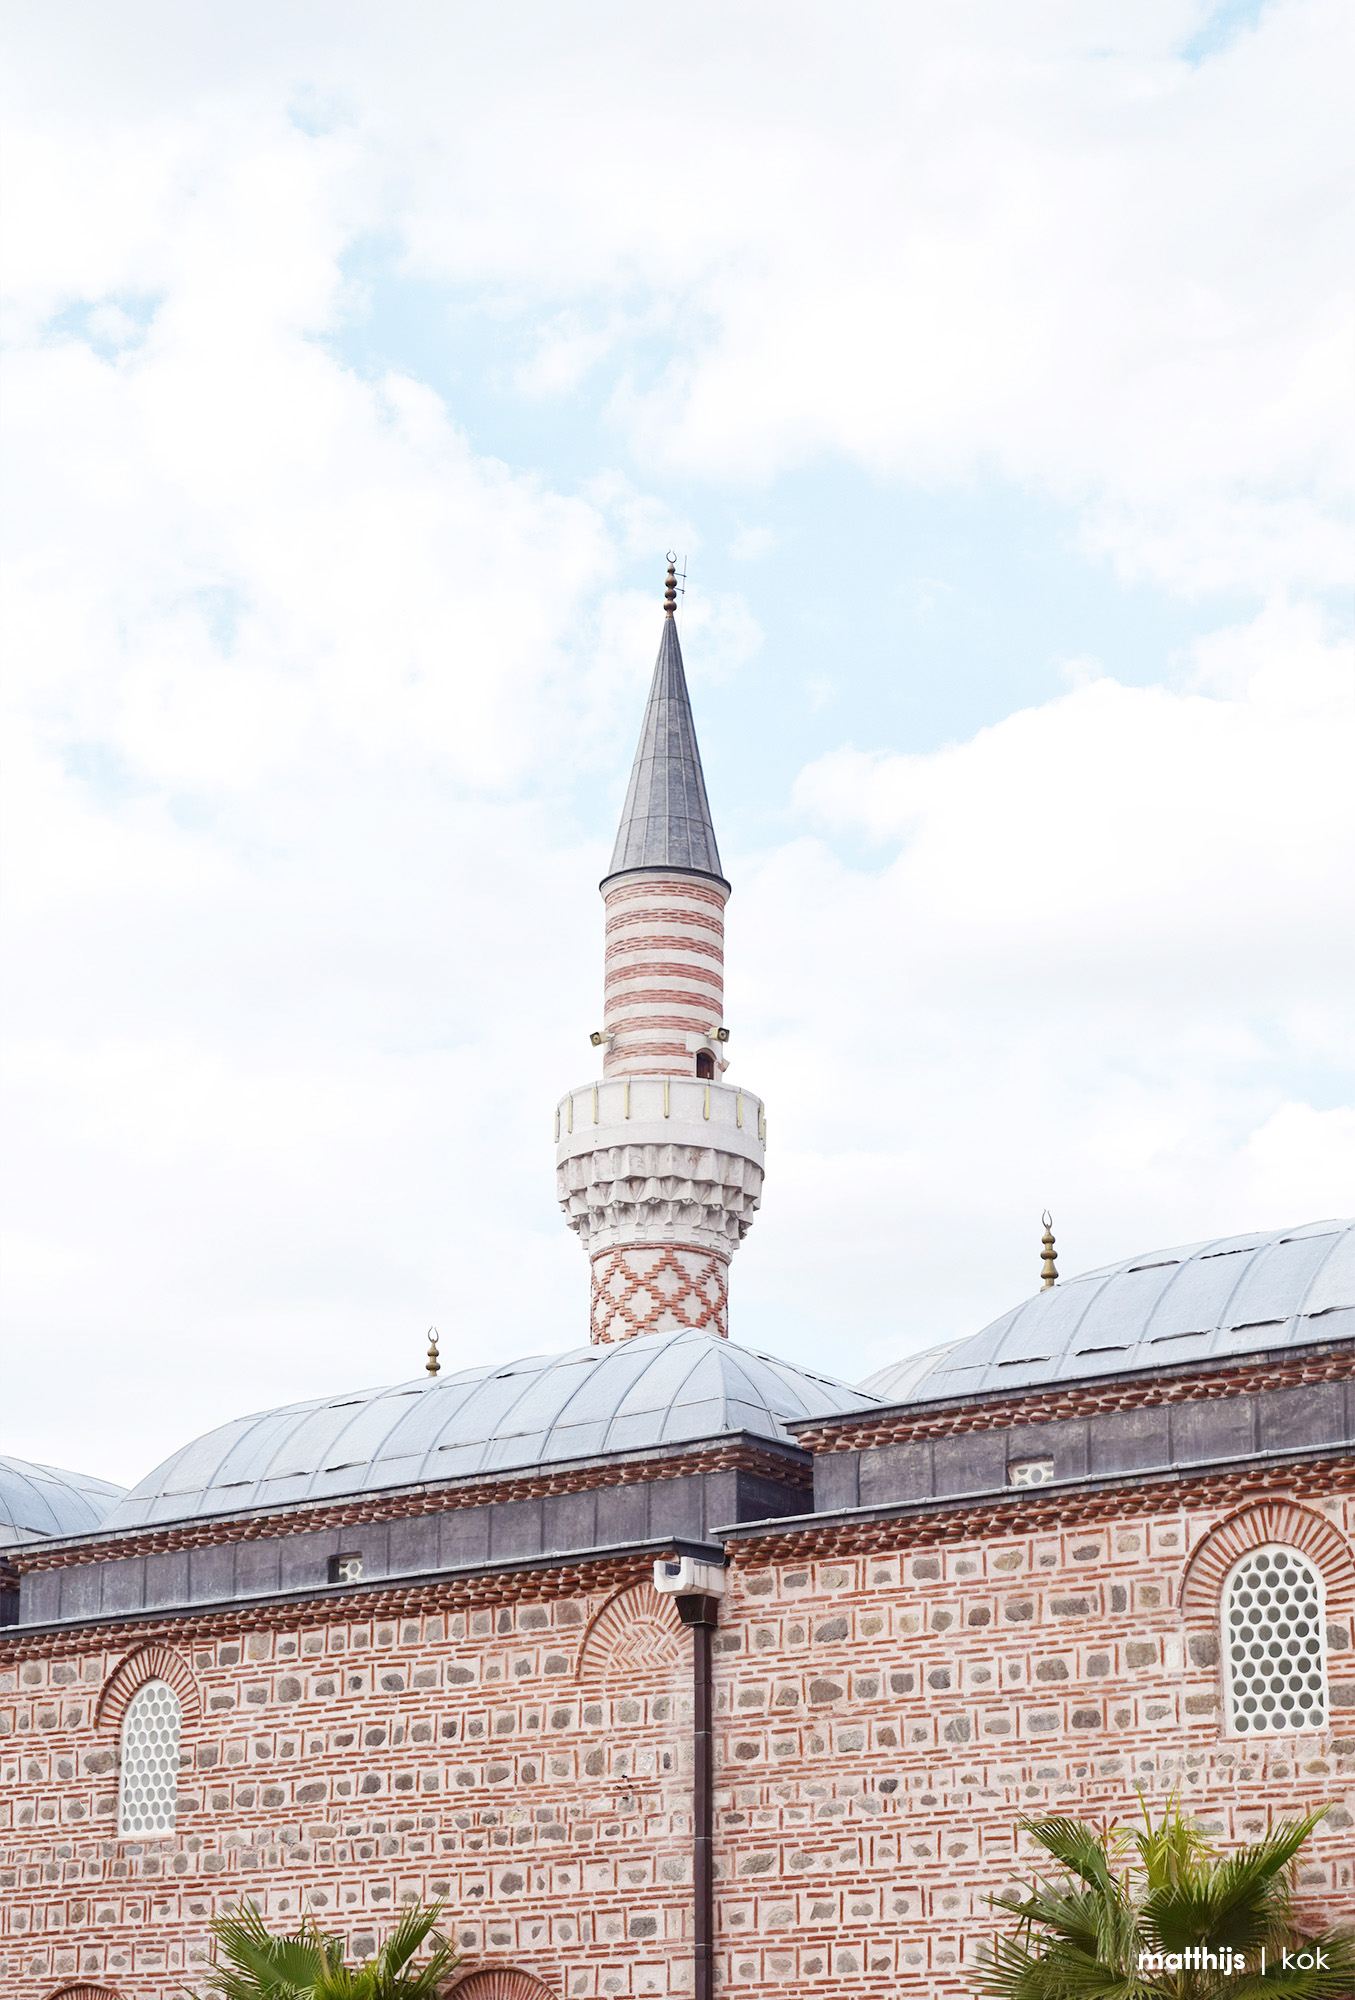 Dzhumaya Mosque, Plovdiv, Bulgaria | Photo by Matthijs Kok